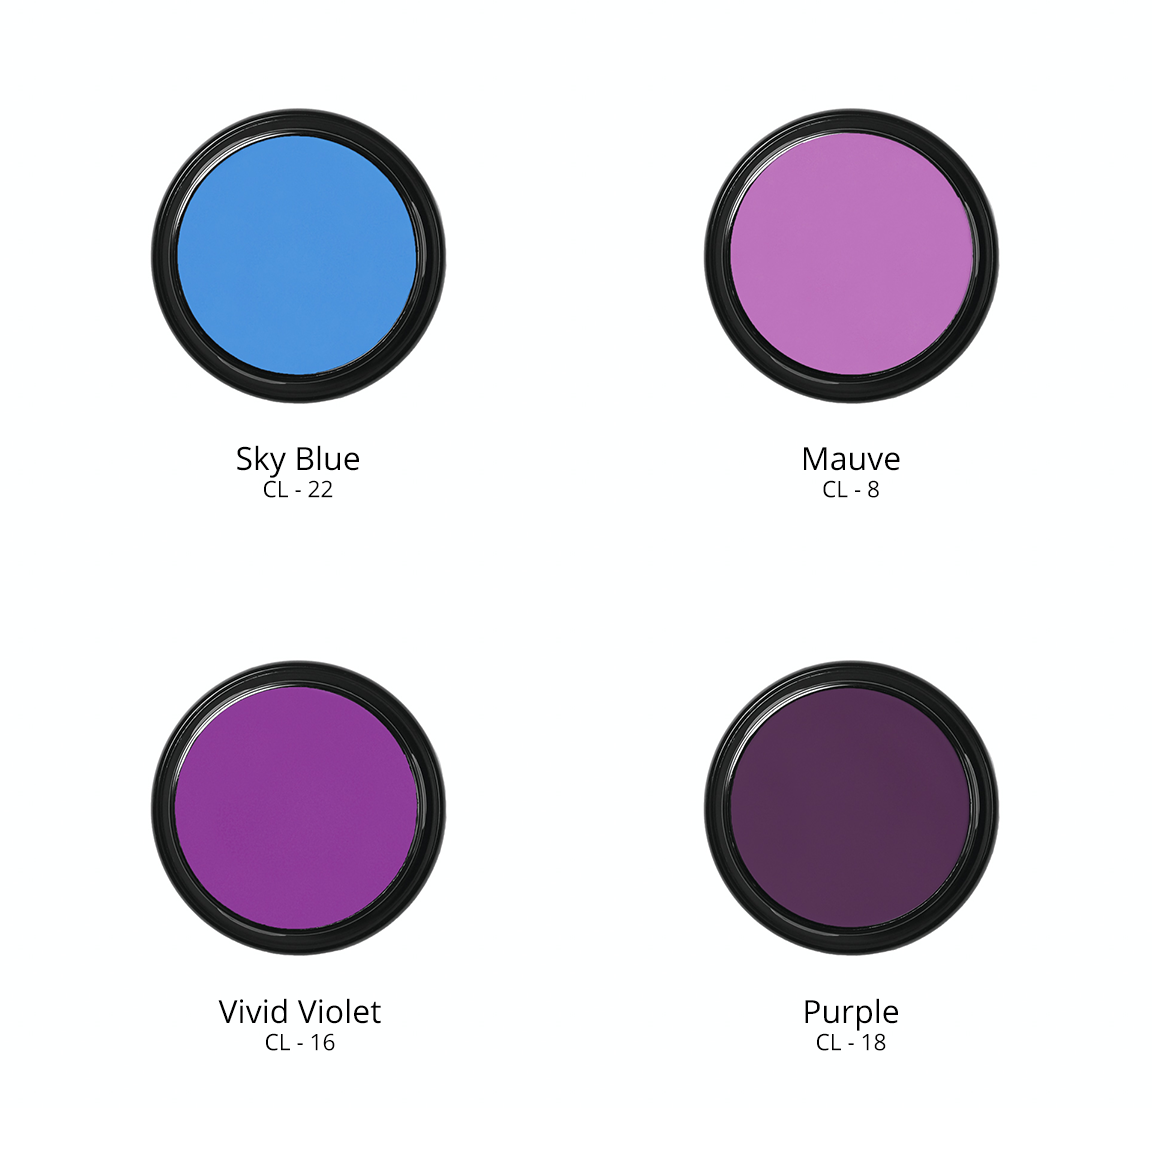 Ben Nye Creme Colors in Sky Blue CL - 22, Mauve CL - 8, Vivid Violet CL - 16, and Purple CL - 18.